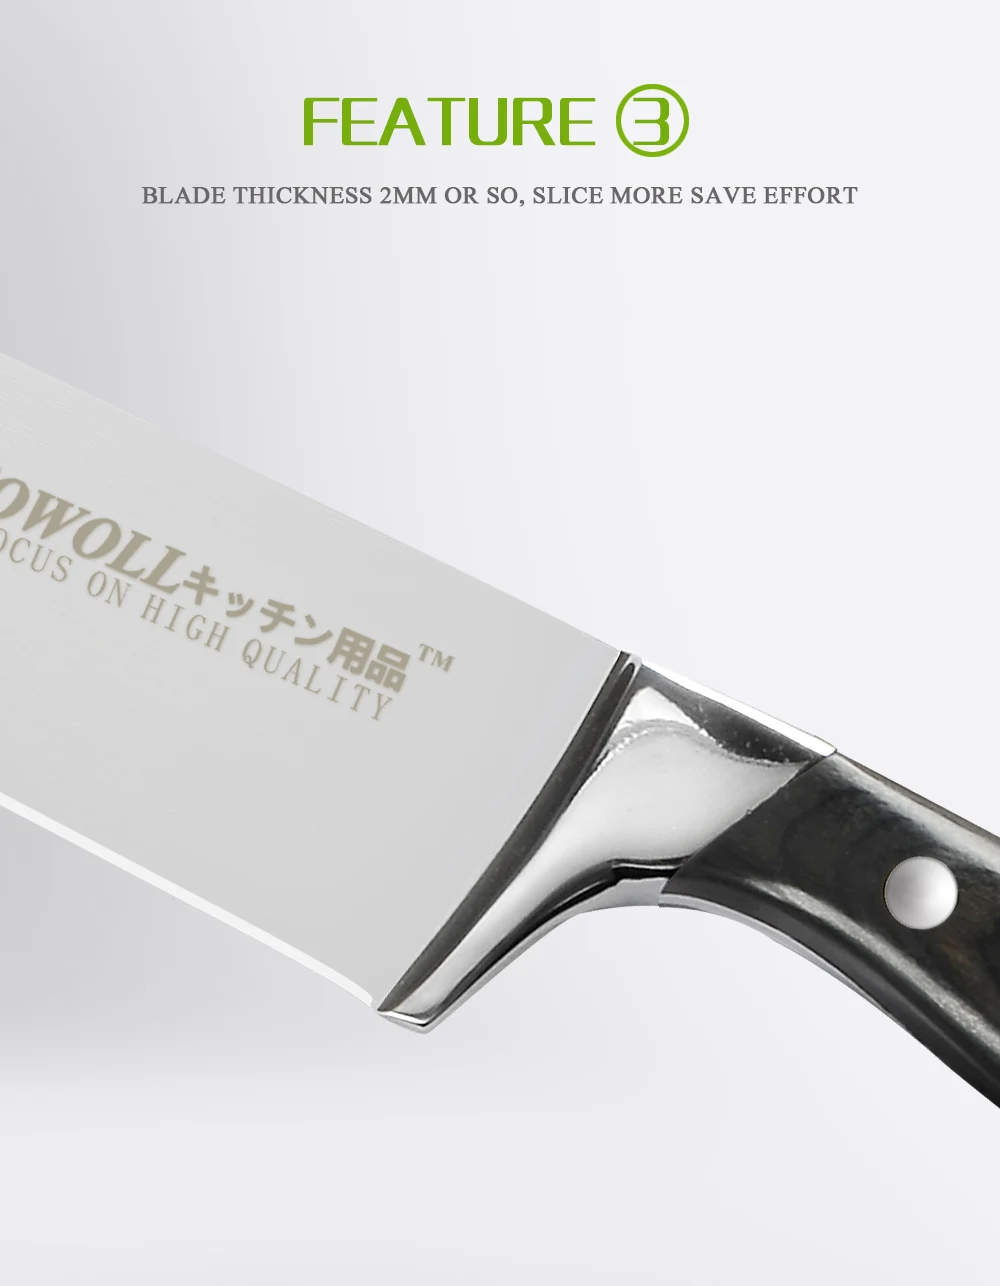 SOWOLL кухонный нож из нержавеющей стали 8 дюймов нож шеф-повара Профессиональный японский цветной деревянной ручкой кухонный нож лучшие кухонные инструменты